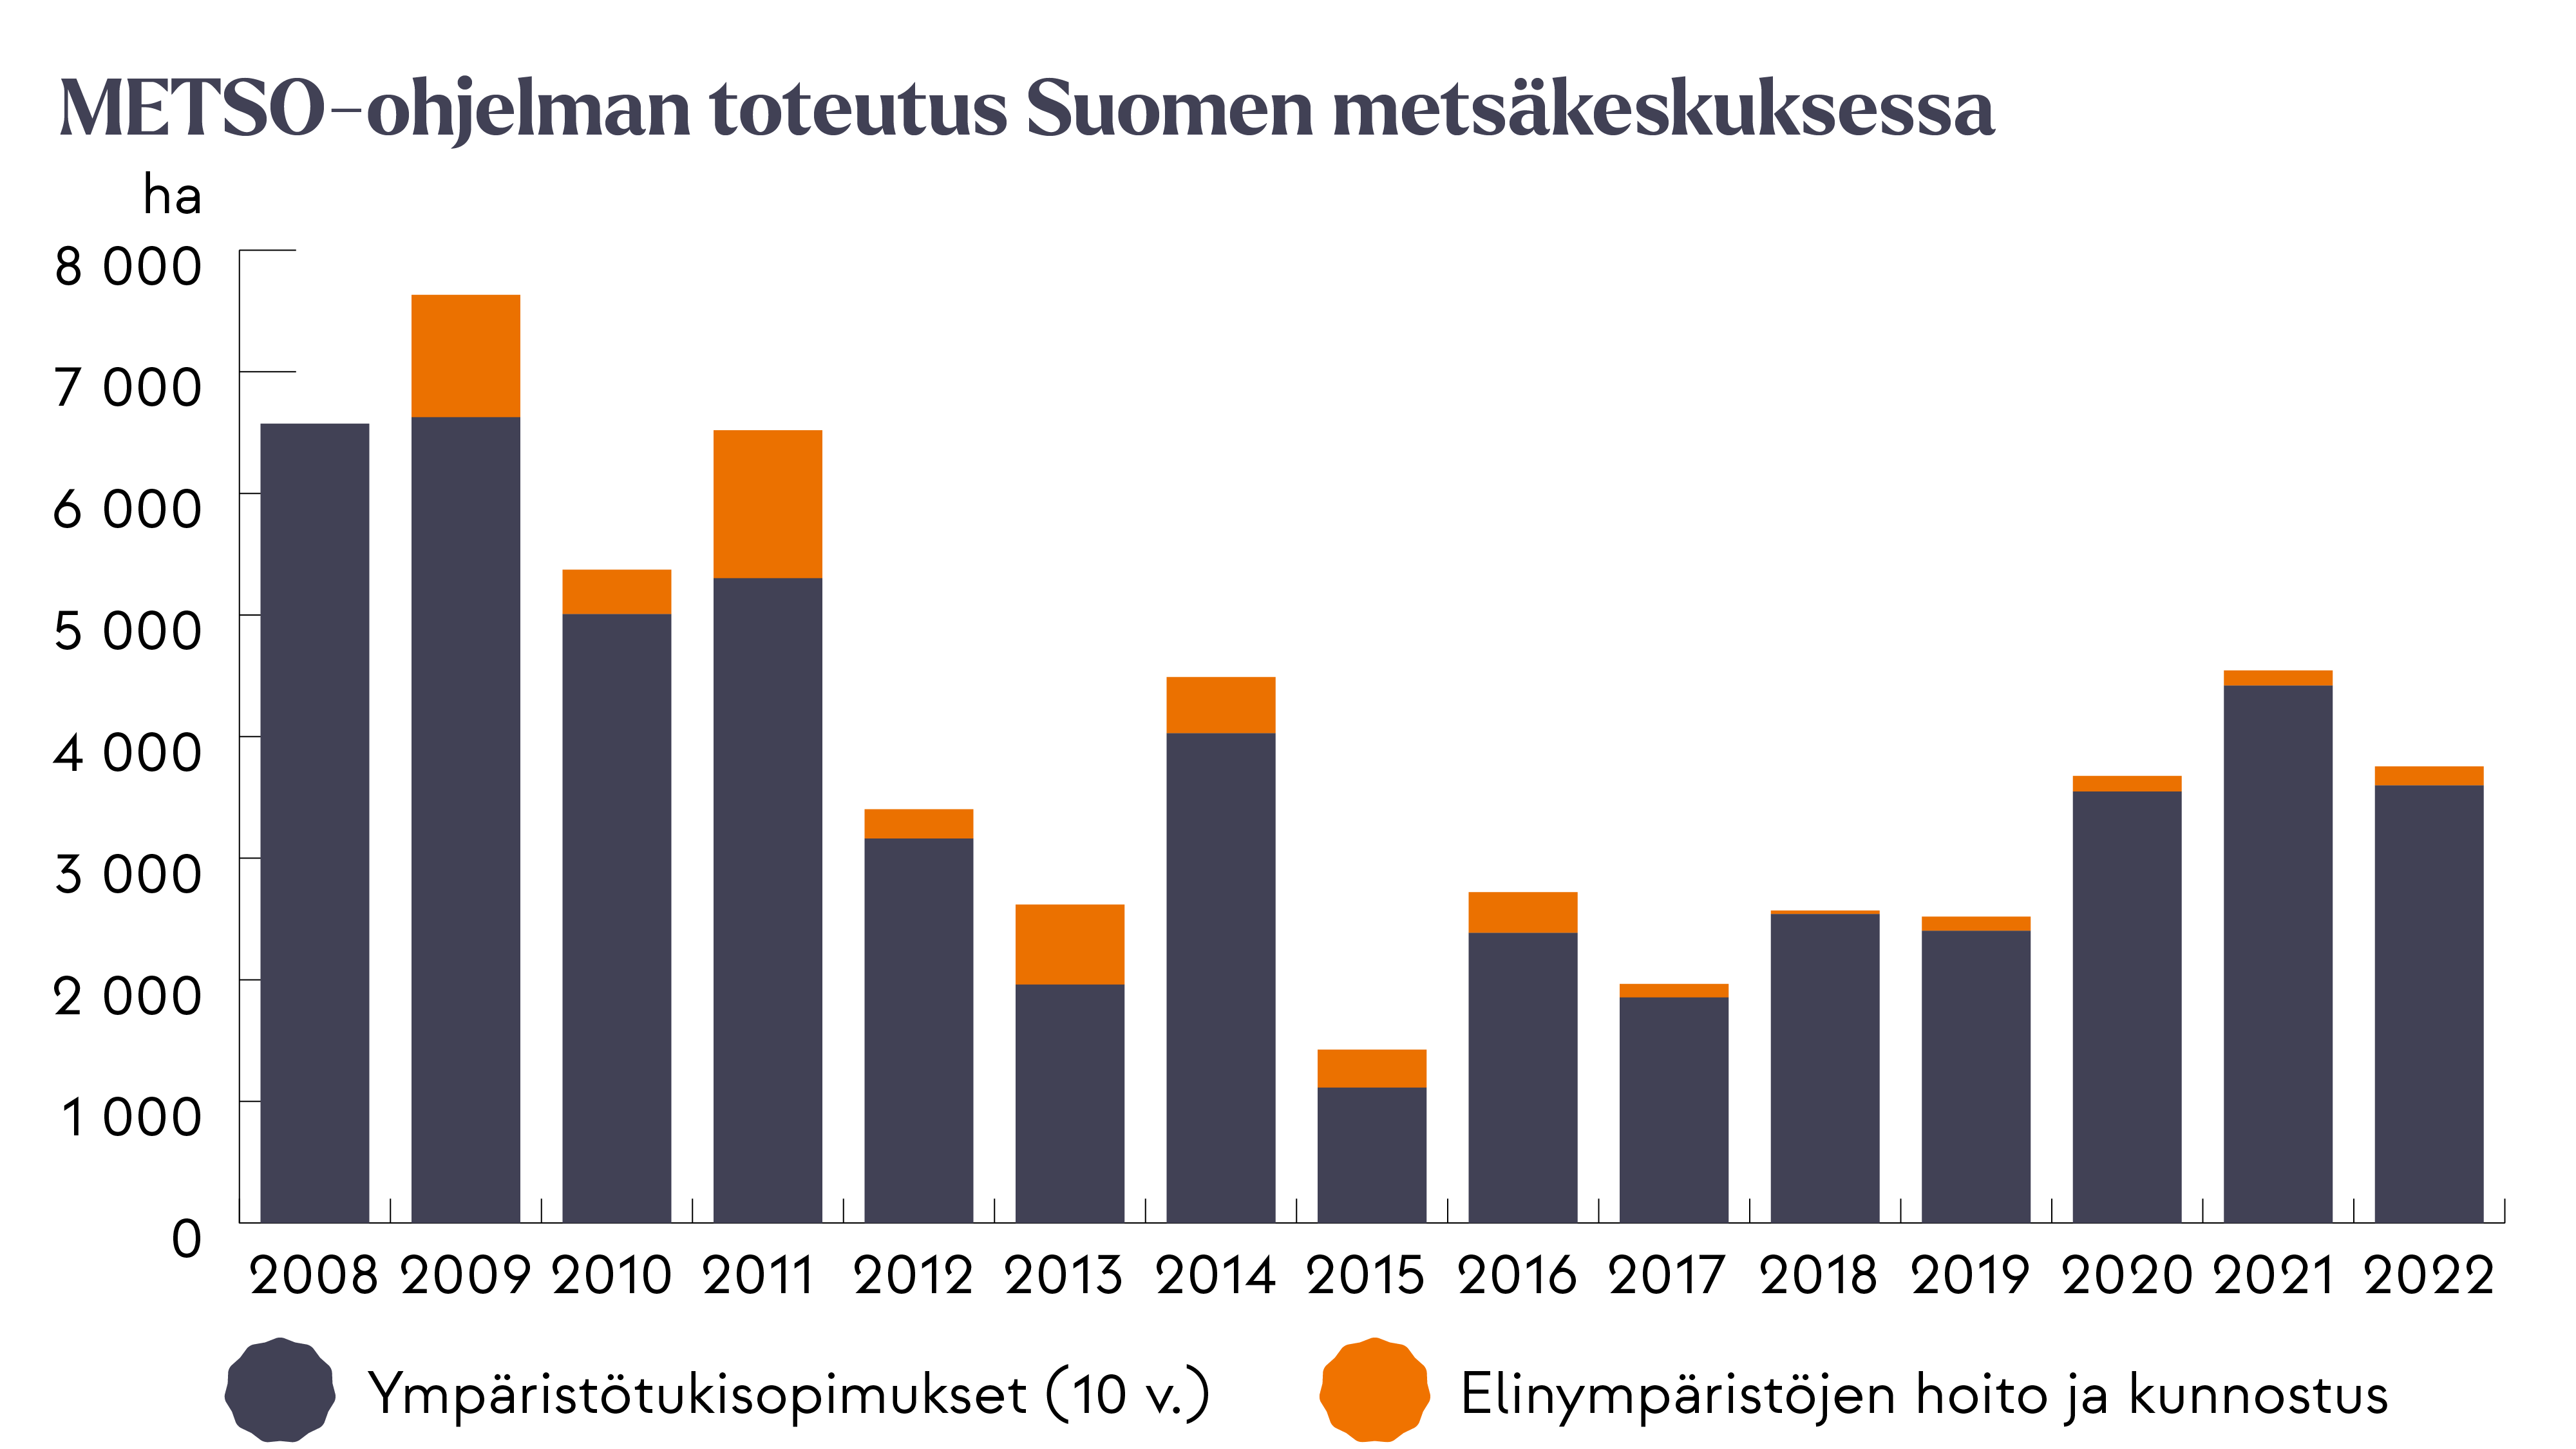 METSO-ohjelman toteutus Suomen metsäkeskuksessa 2008-2022